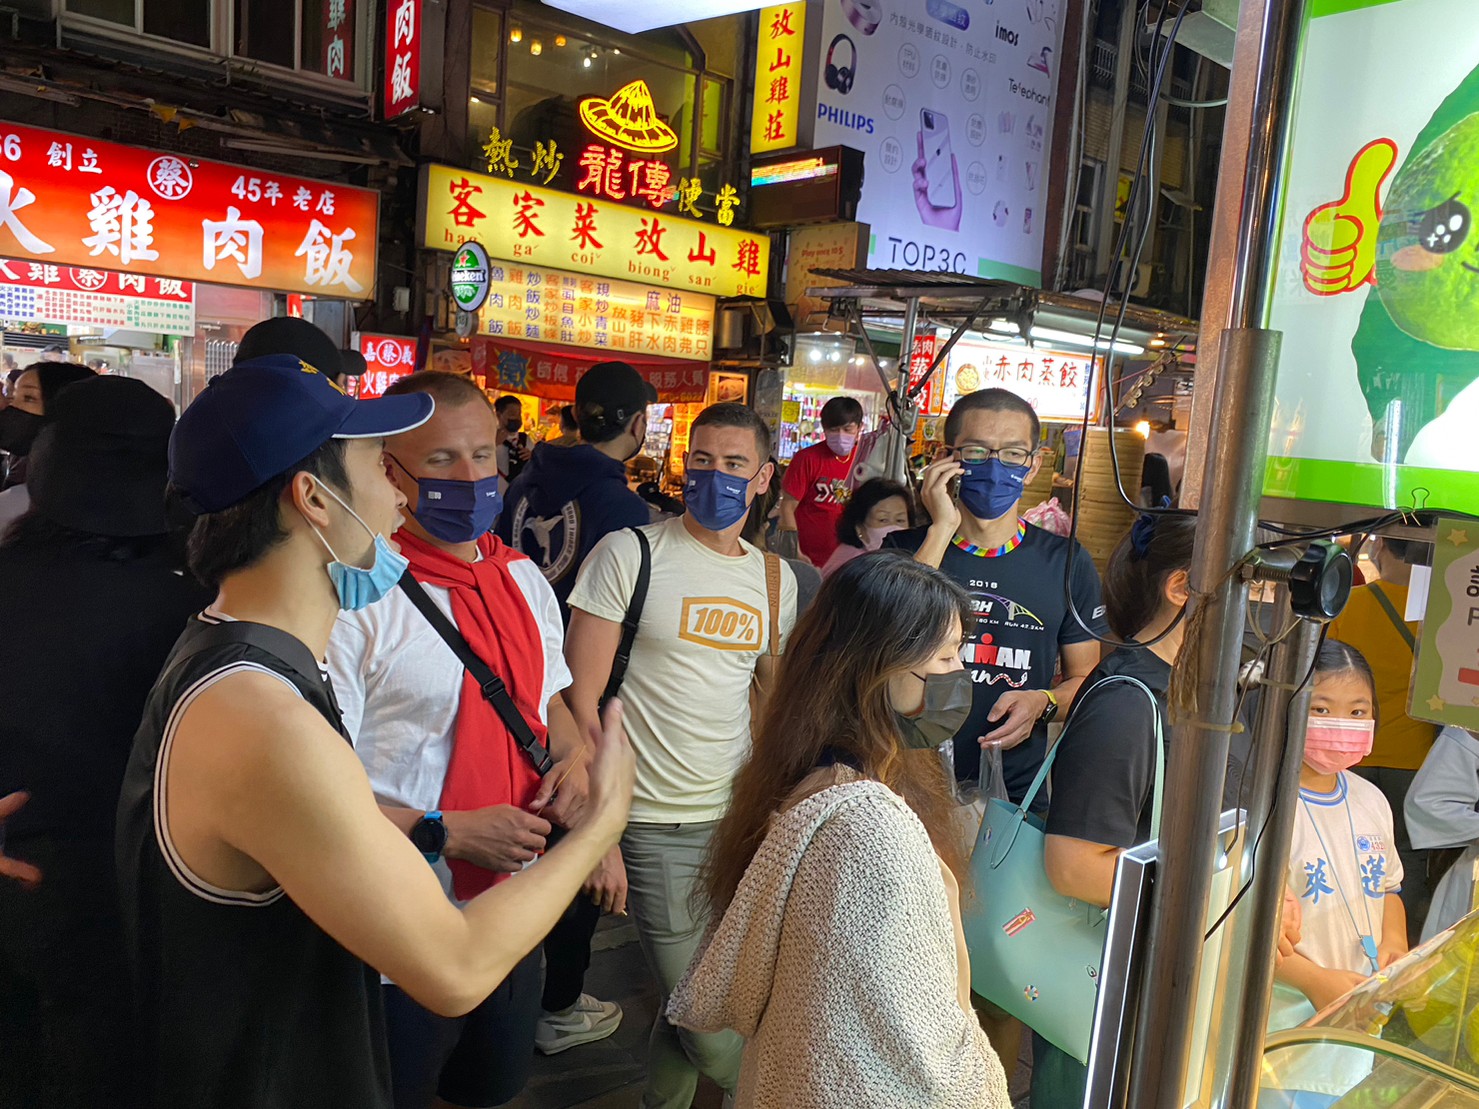 冠軍選手來台體驗台灣夜市文化好熱鬧。巨大提供